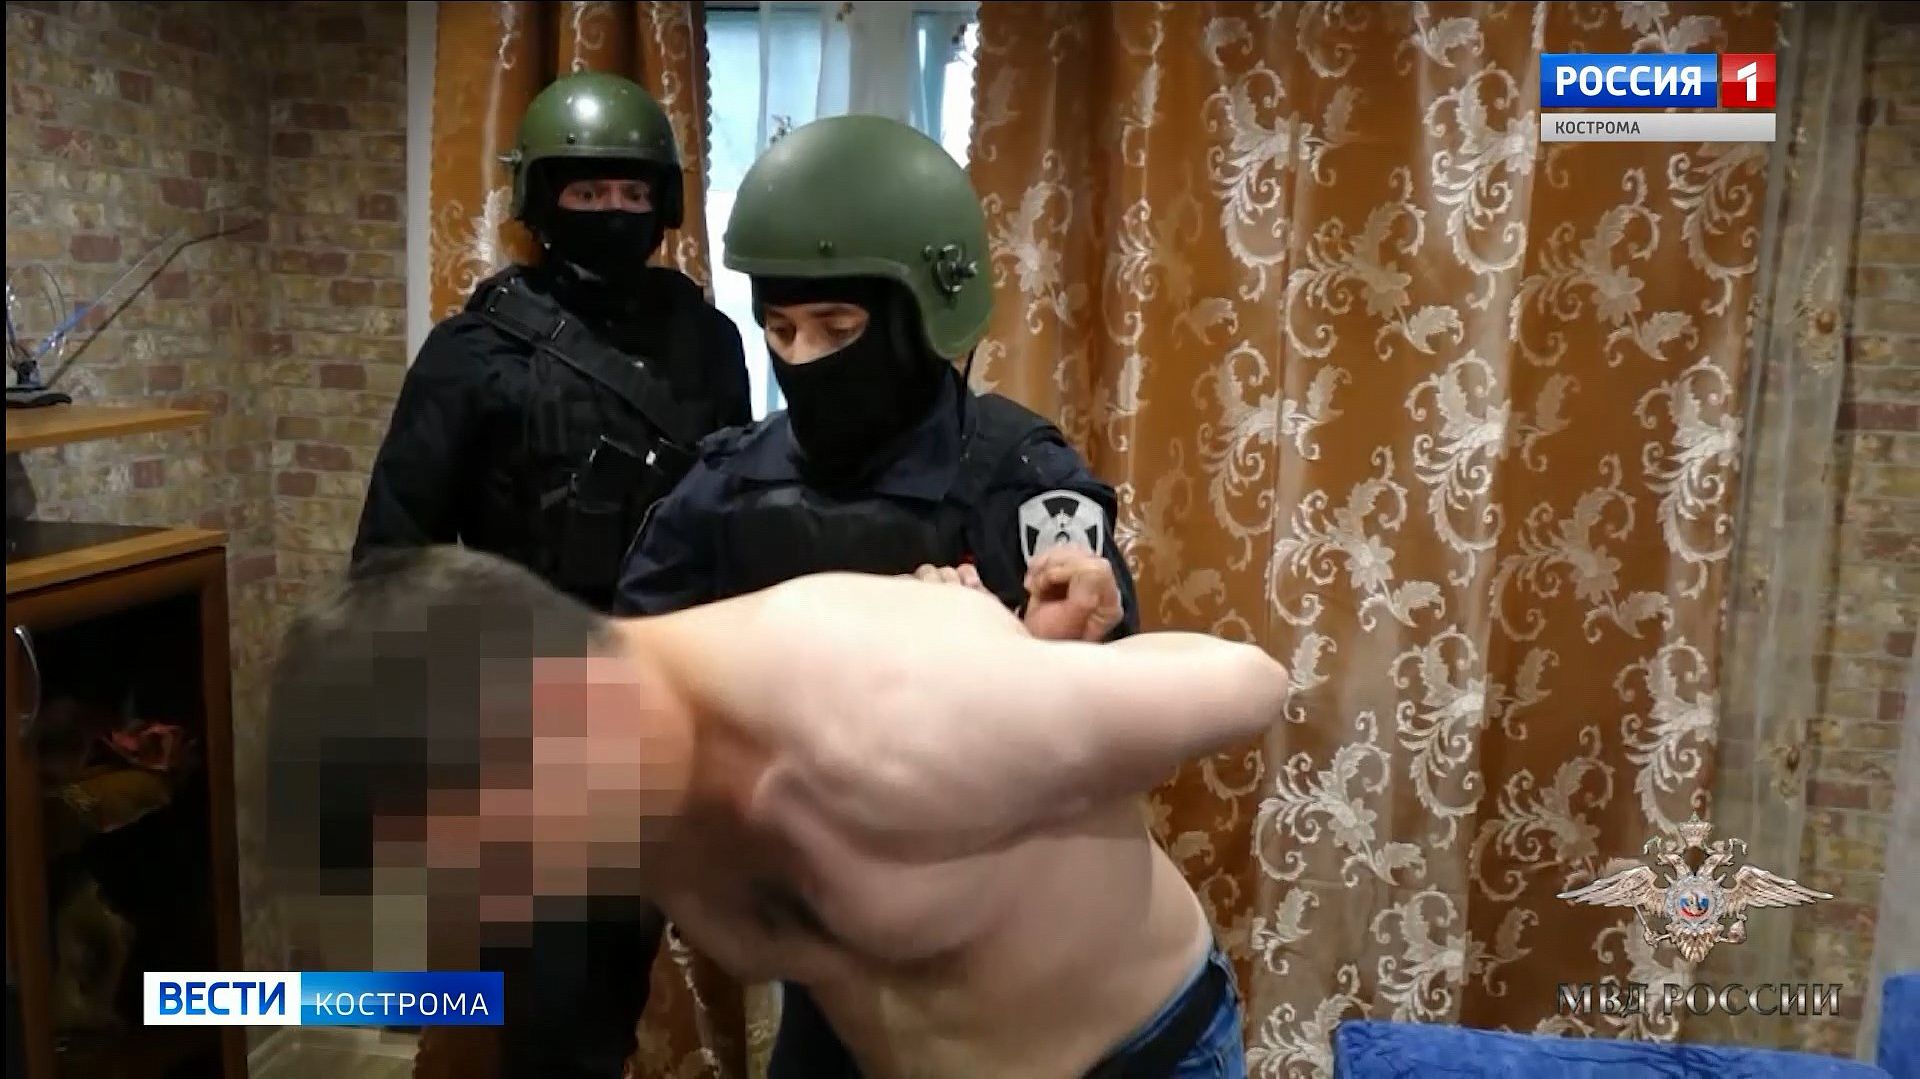 Шайка из 19 автоподставщиков задержана в Костроме